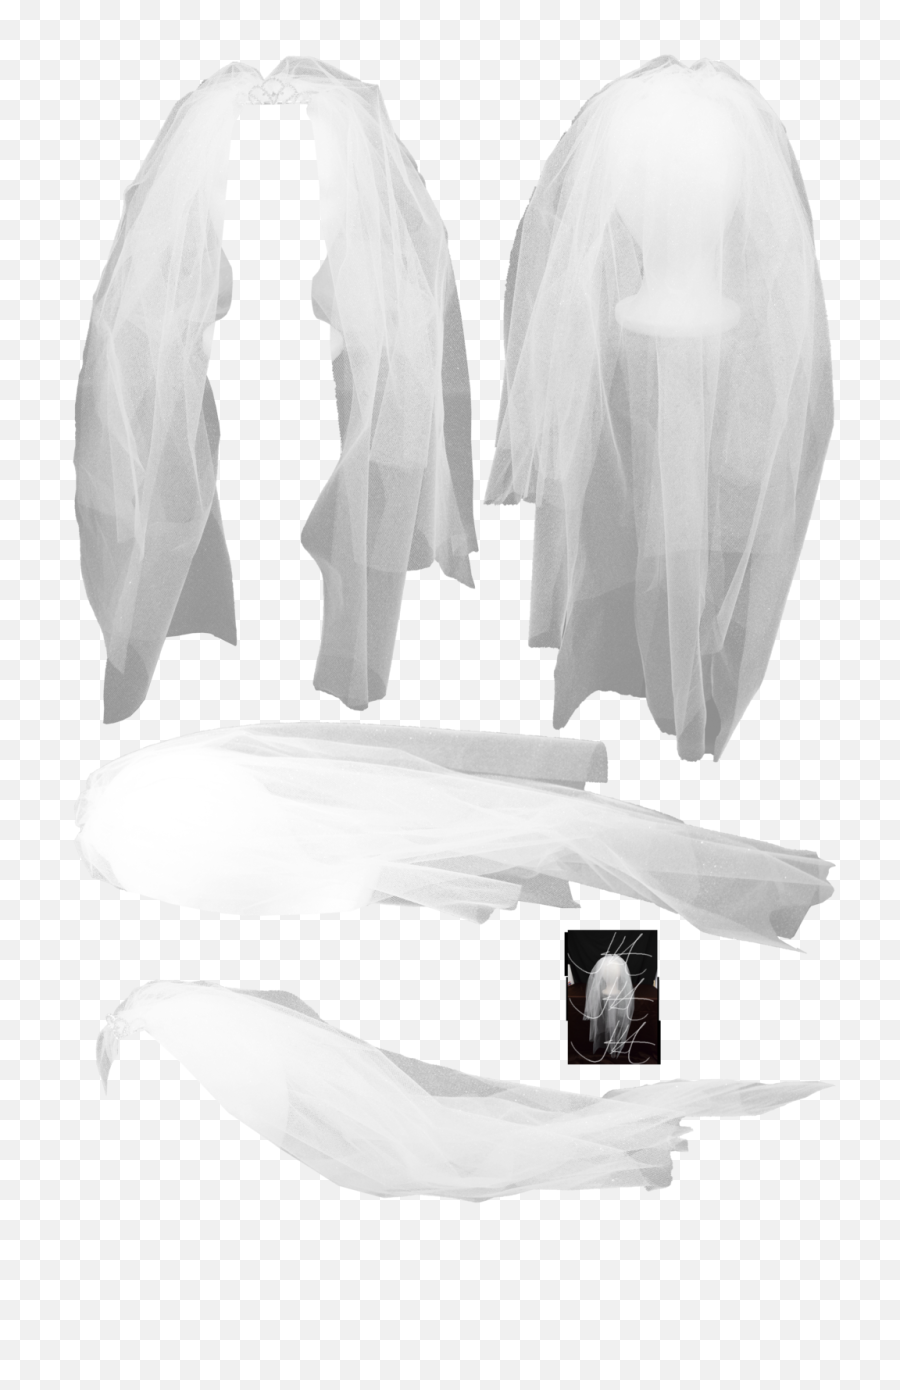 Bridal Veil Png 2 Image - Transparent Background Veil Png,Veil Png